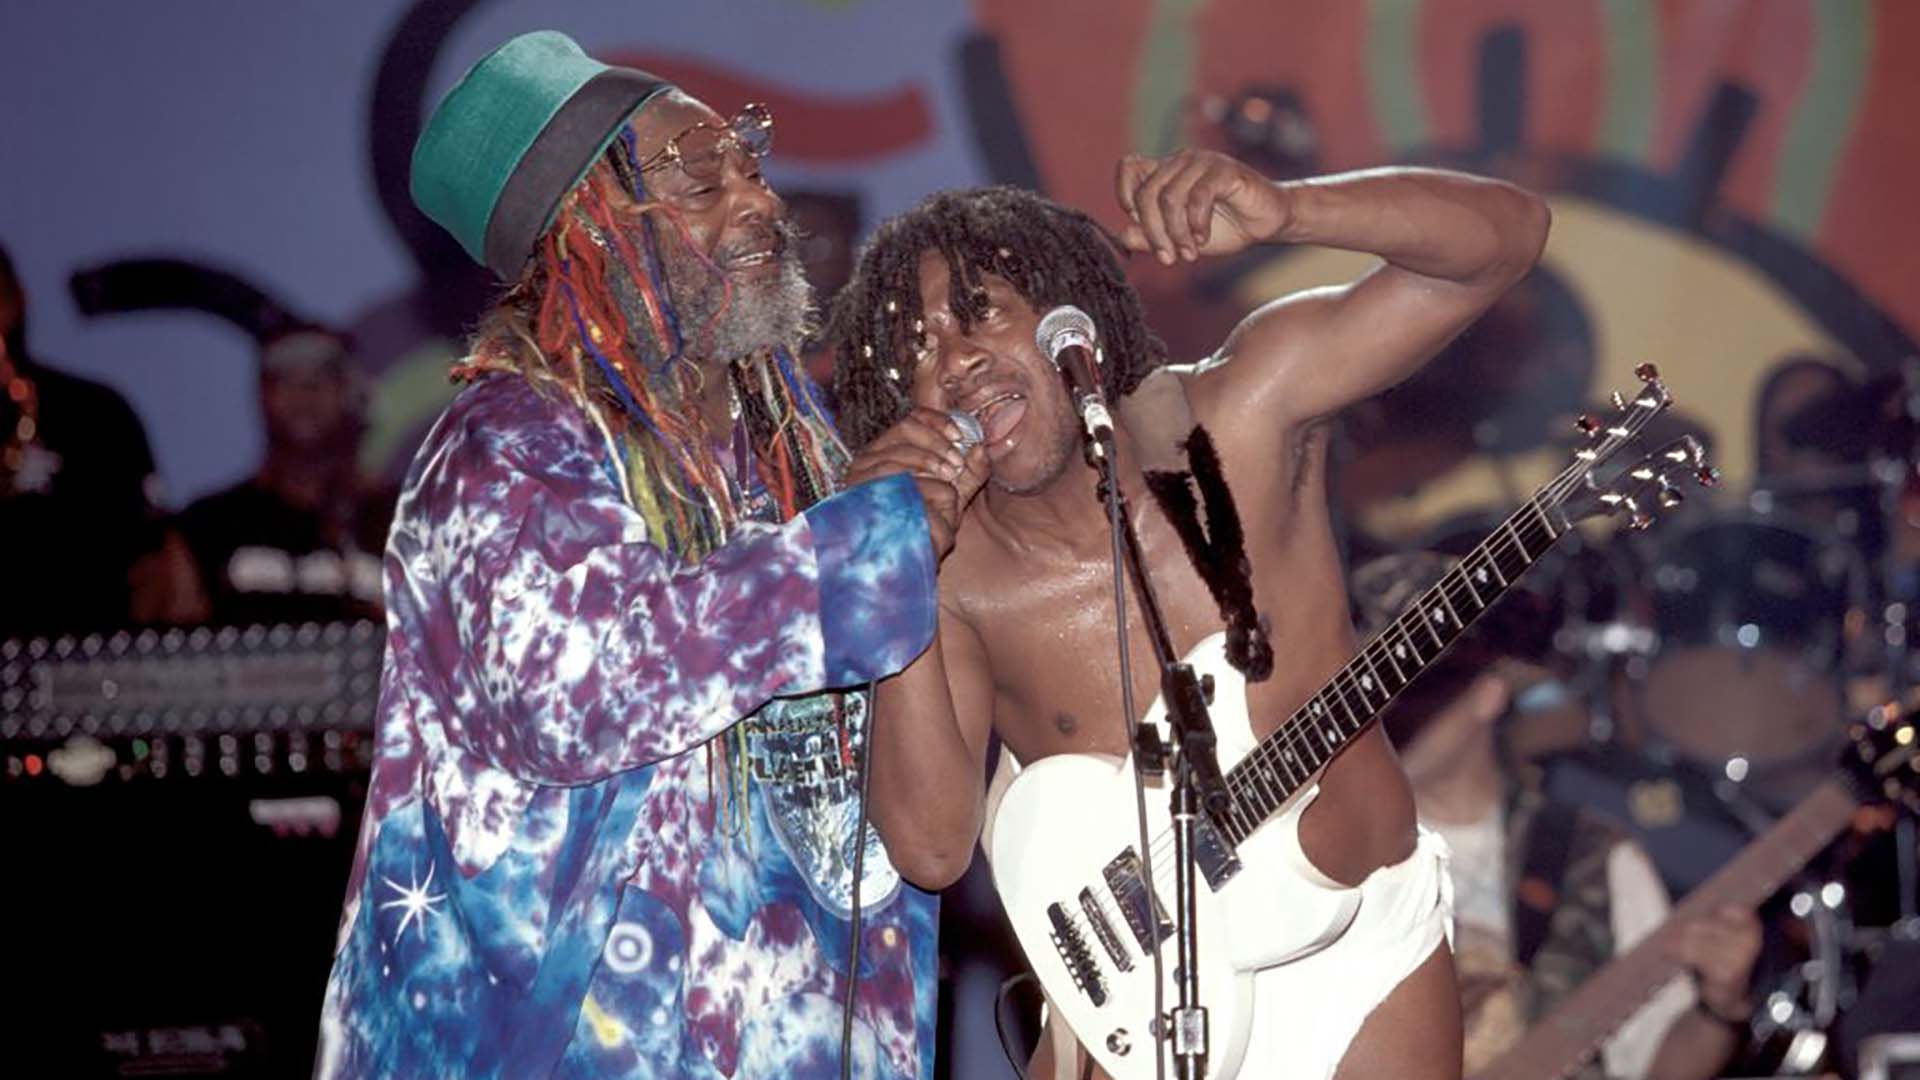 El funk es inclusivo desde lo musical, exclusivo desde sus ritos. El guitarrista de Funkadelic toca hace 50 años en pañales (Getty Images)